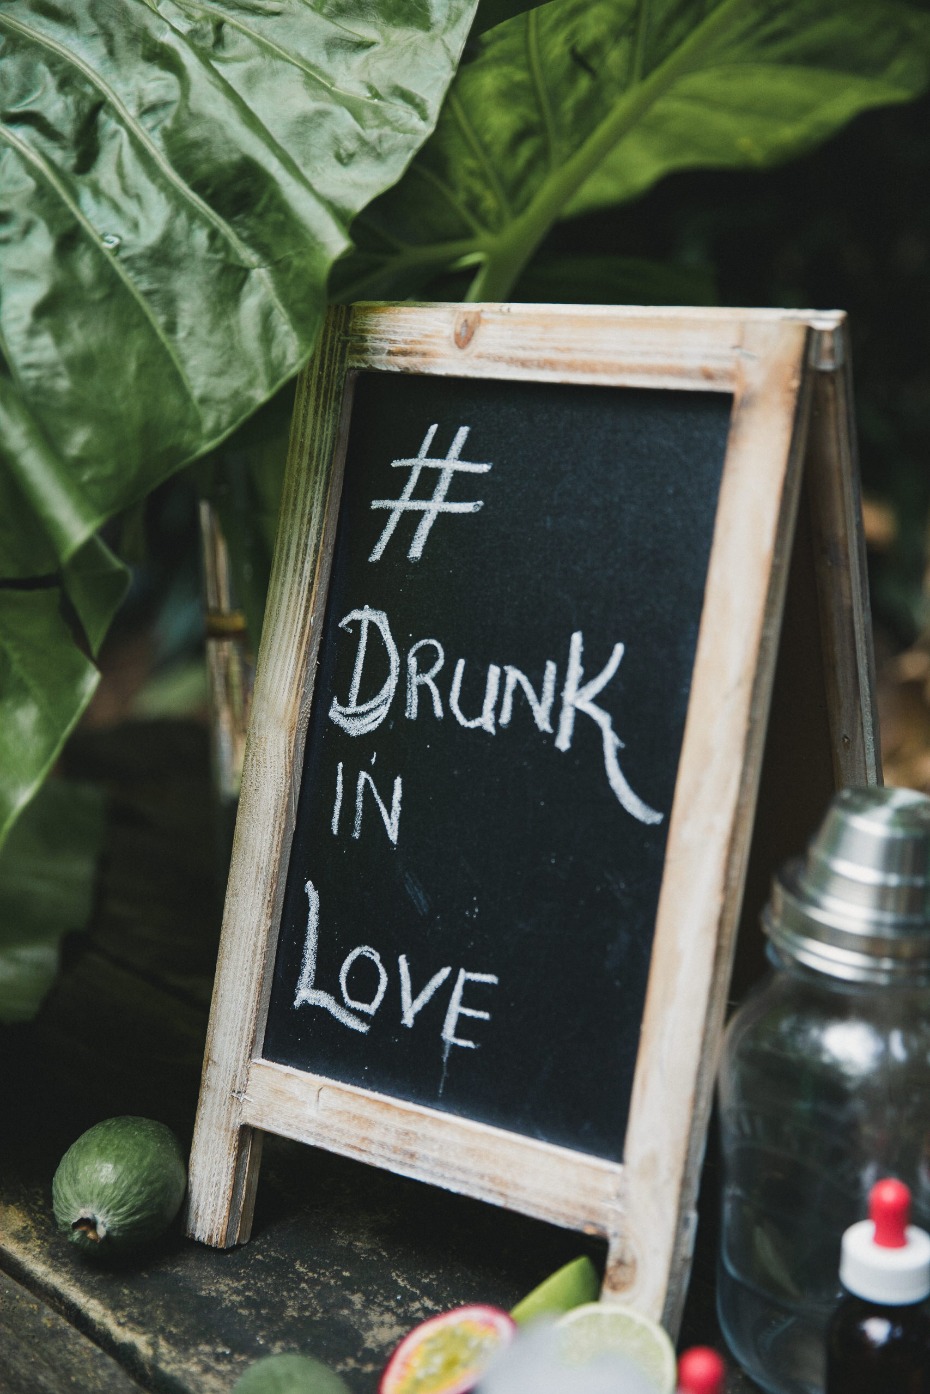 Drunk in love wedding sign